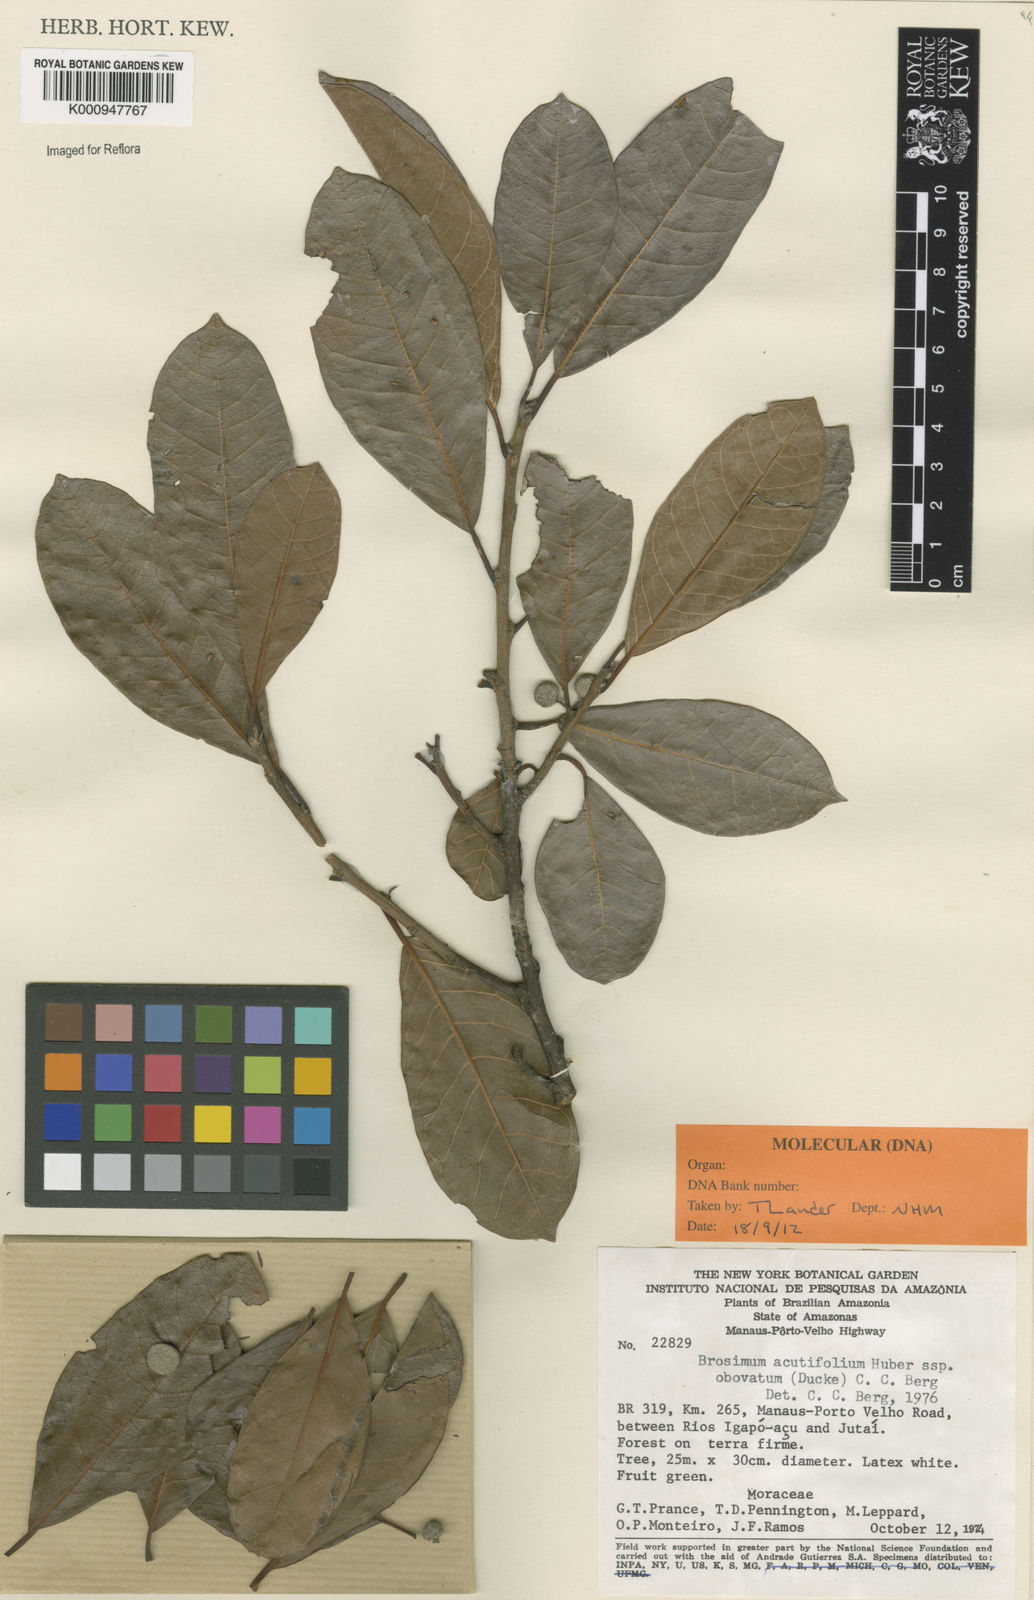 Brosimum Acutifolium Subsp Obovatum Ducke C C Berg Plants Of The World Online Kew Science